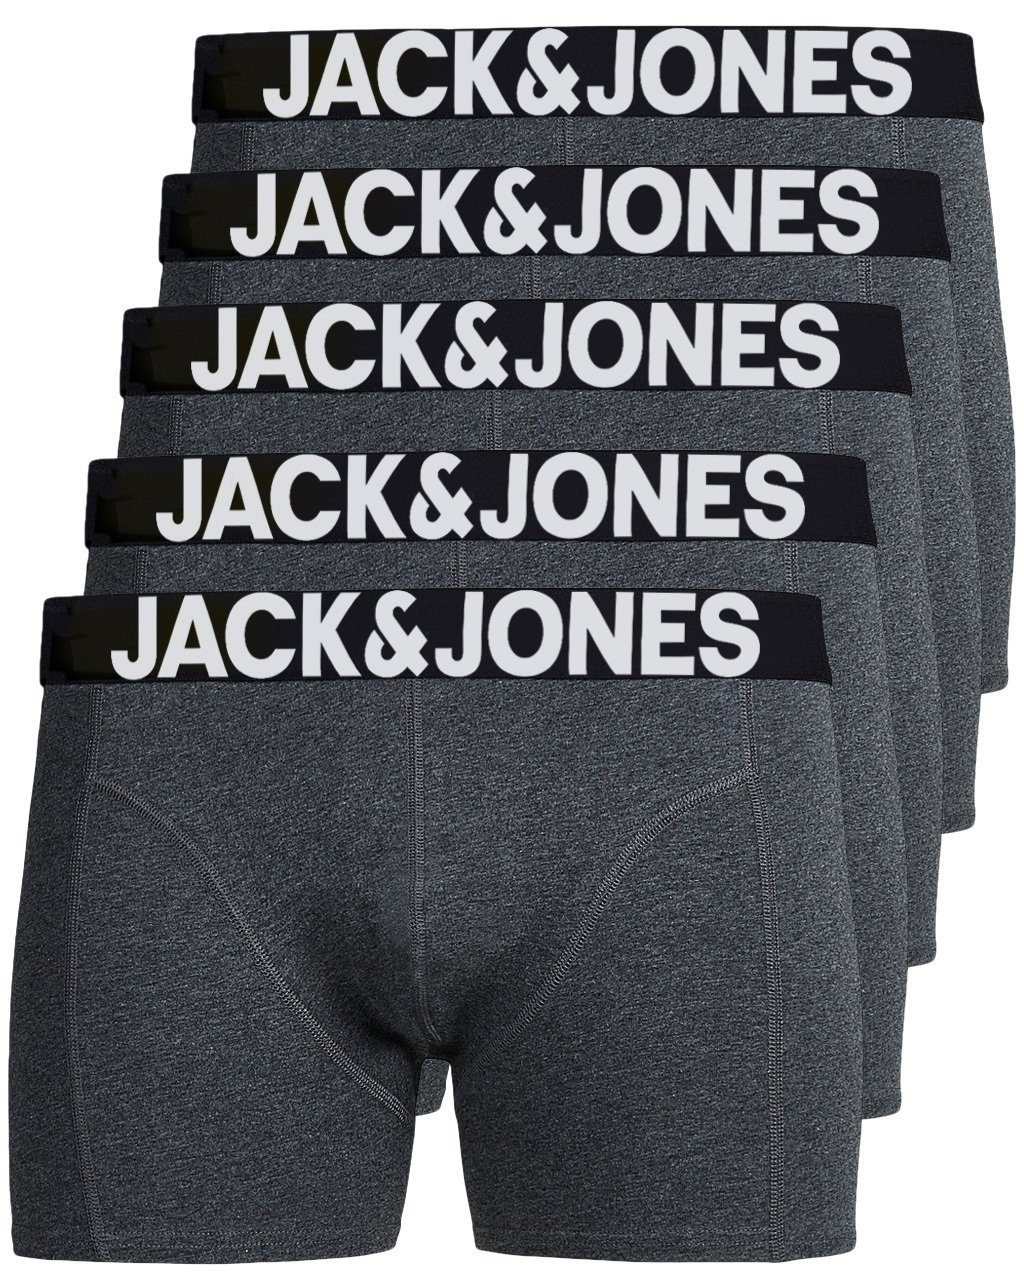 Jack & Jones Boxershorts Solid (5-St., 5er Pack) gute Passform durch elastische Baumwollqualität grau